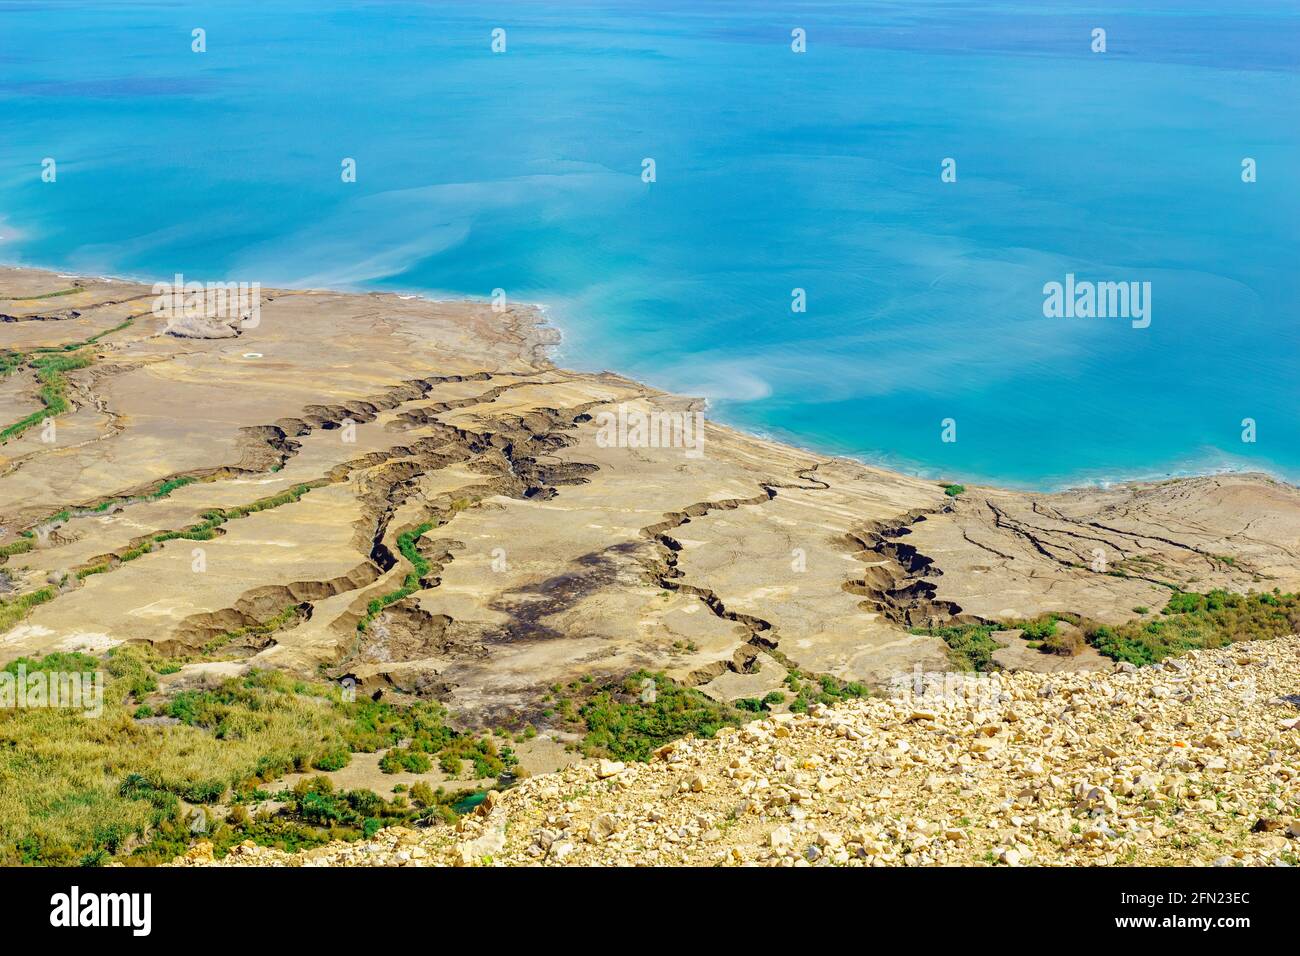 Vista della parte settentrionale del Mar Morto e della riserva naturale di Einot Tzukim (Ein Feshkha), Israele meridionale Foto Stock